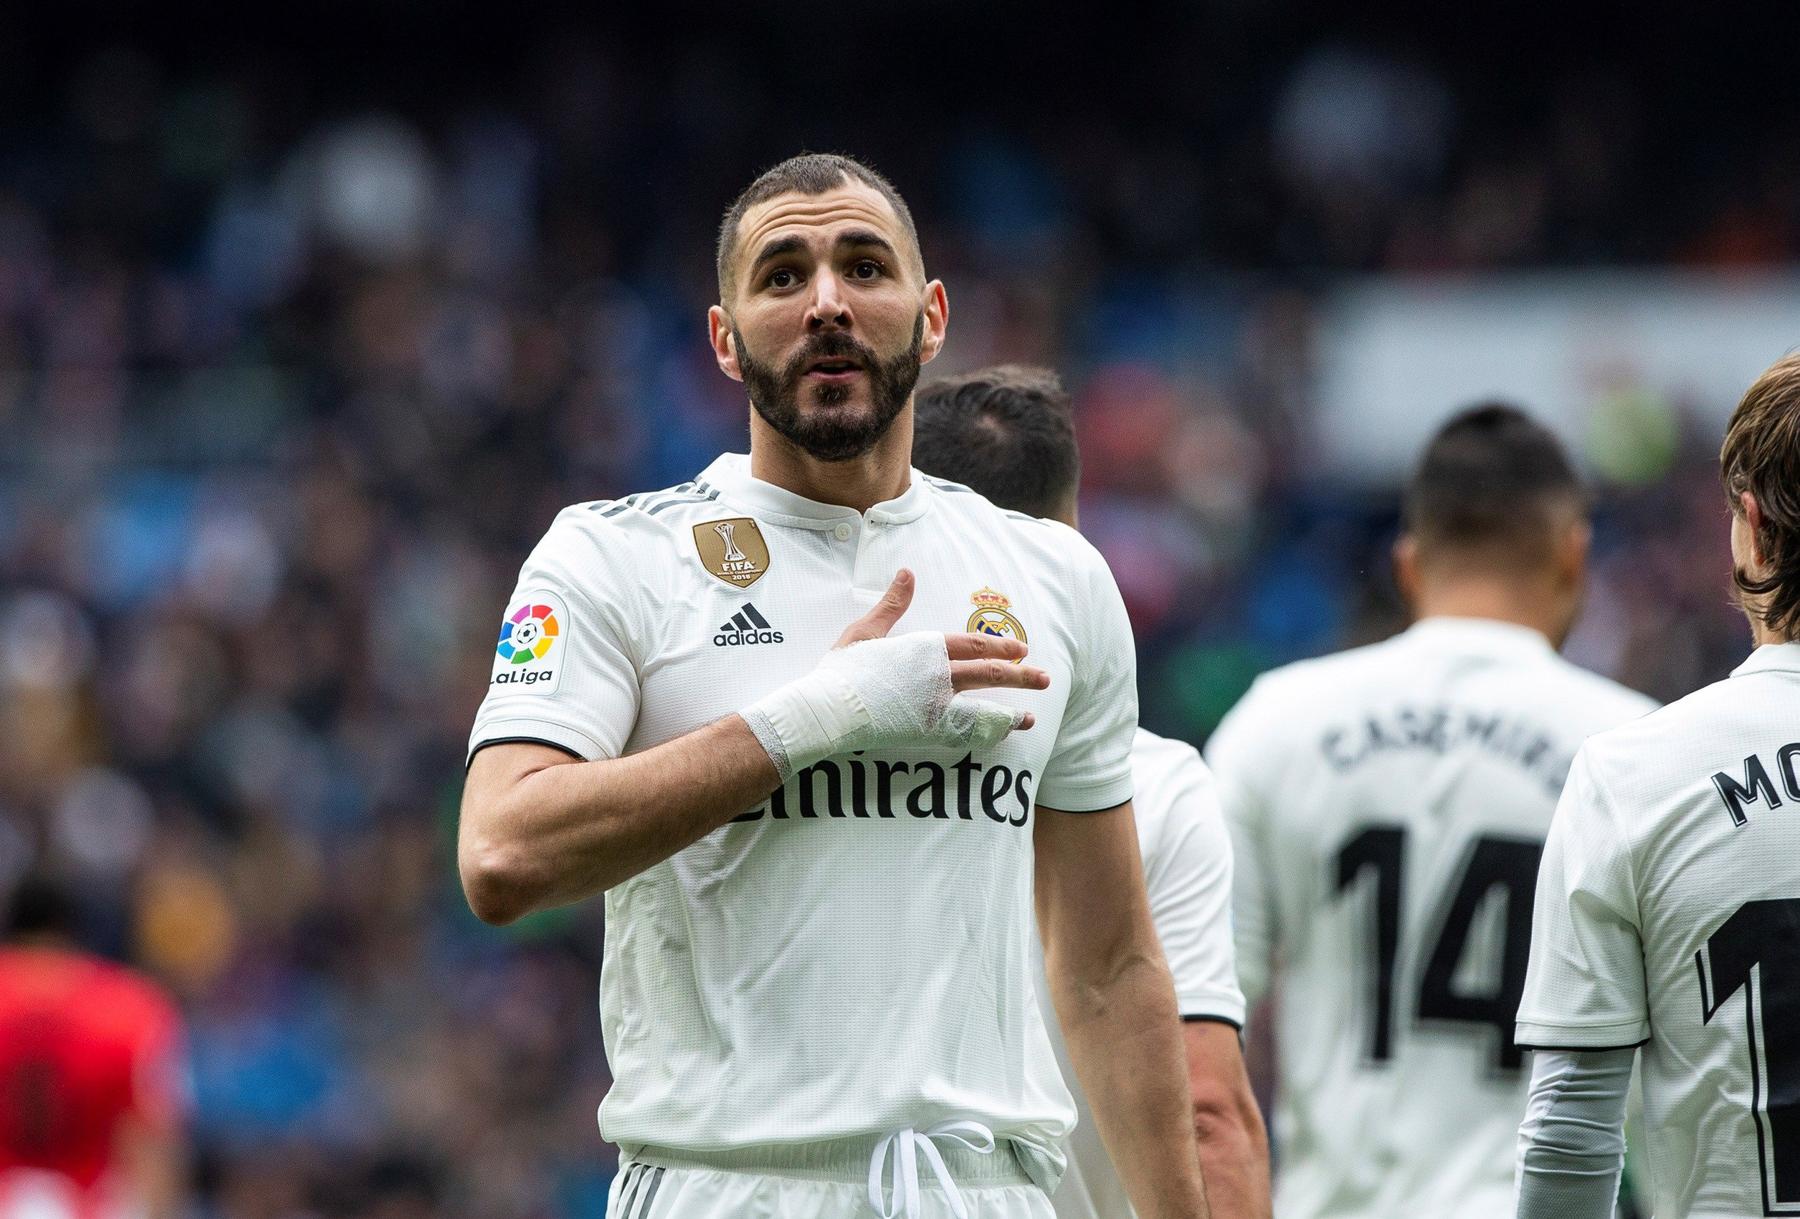 Sobre la actual temporada del Real Madrid, Benzema comentó que 'no ha sido un año fácil para el Madrid, pero sí ha sido bueno a nivel personal'.